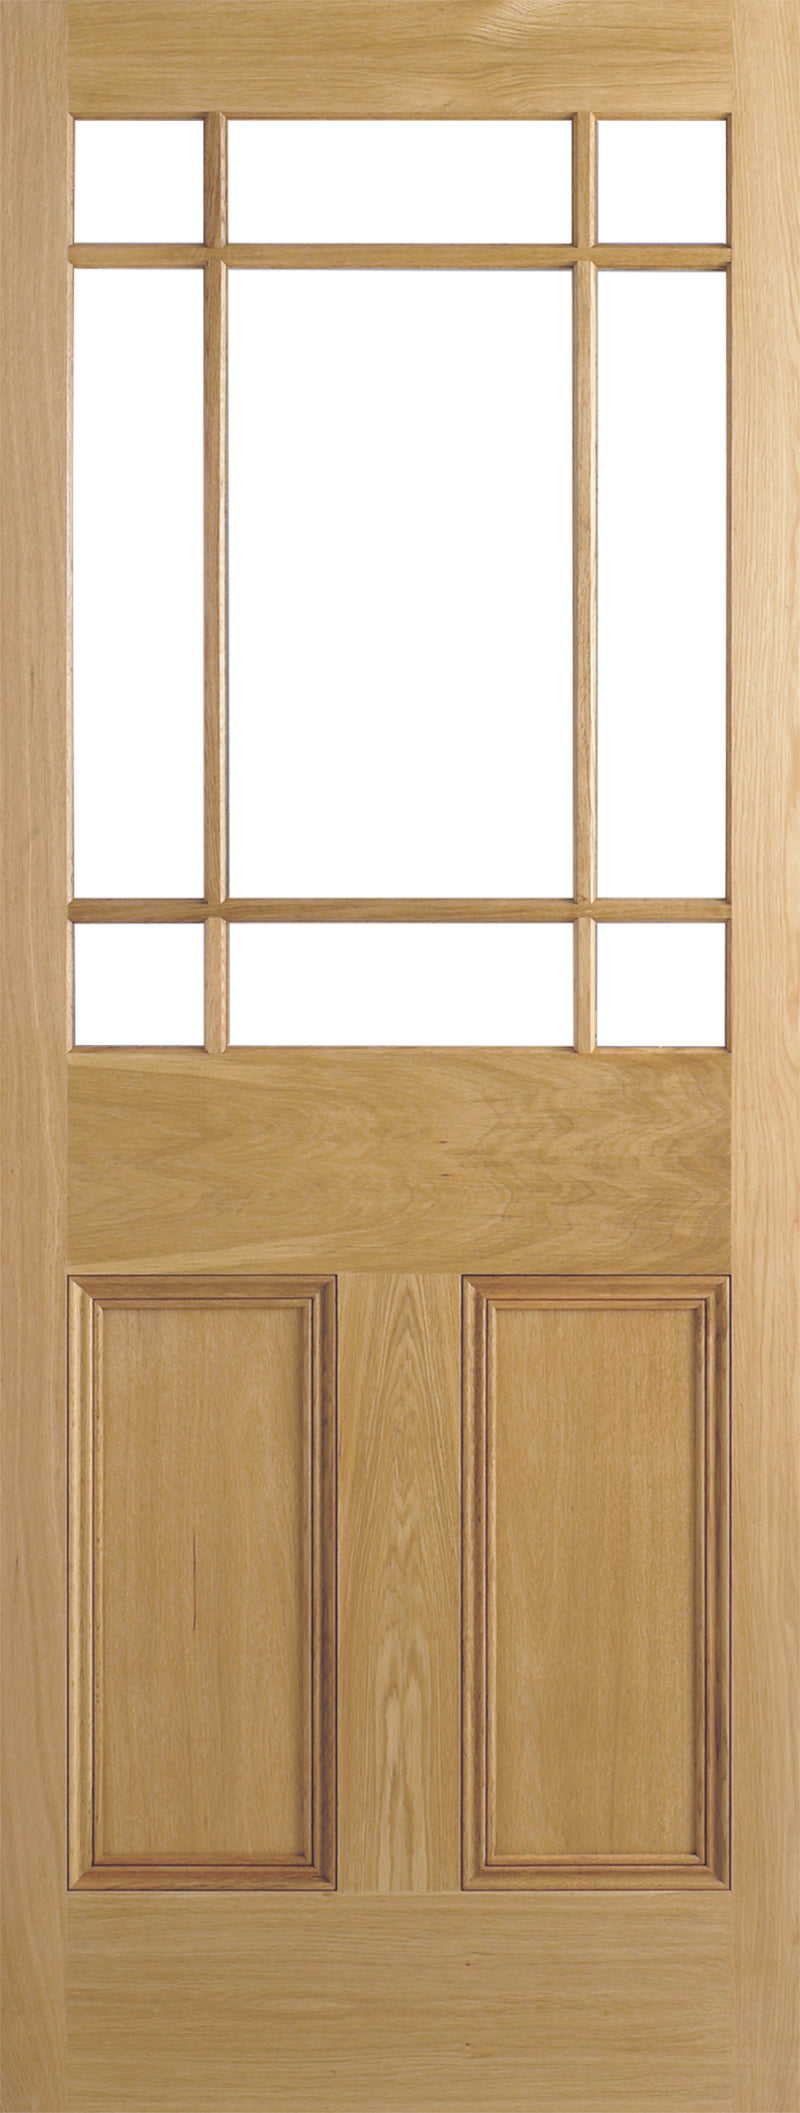  Downham internal oak door, unglazed